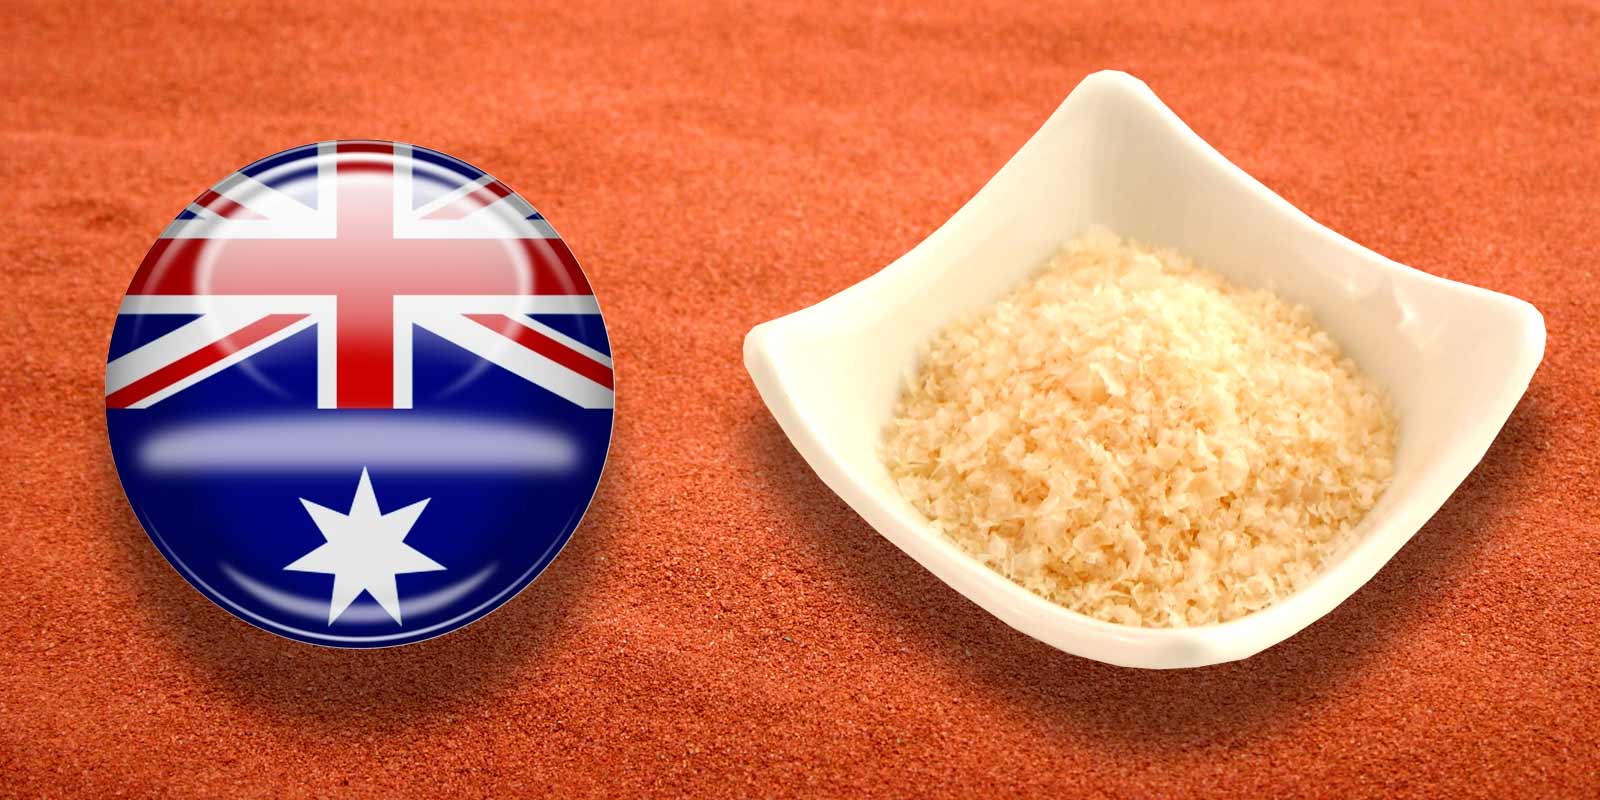 Murray River sol iz Australije Australska rijecna sol Murray sastoji se od suptilnih kristala boje breskve.
Pahuljice su blagog okusa i idealne su za zacinjanje ili koristenje kao kuhinjska sol. Doslovno se tope medu prstima.